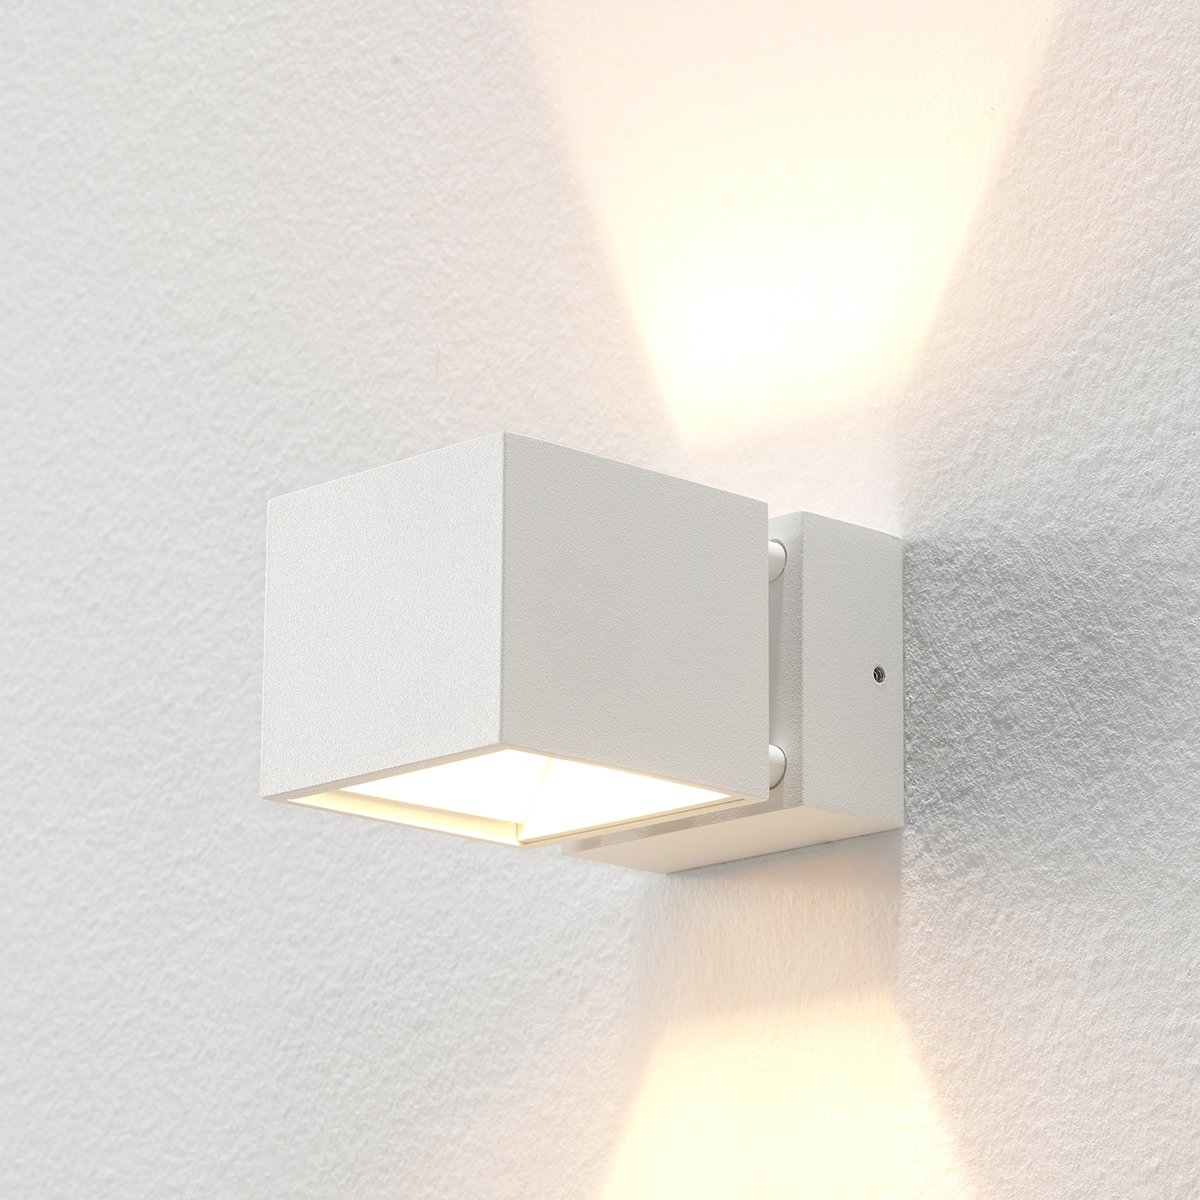 Wandverlichting Muurlamp design up down wit Acuto - 6.8 cm